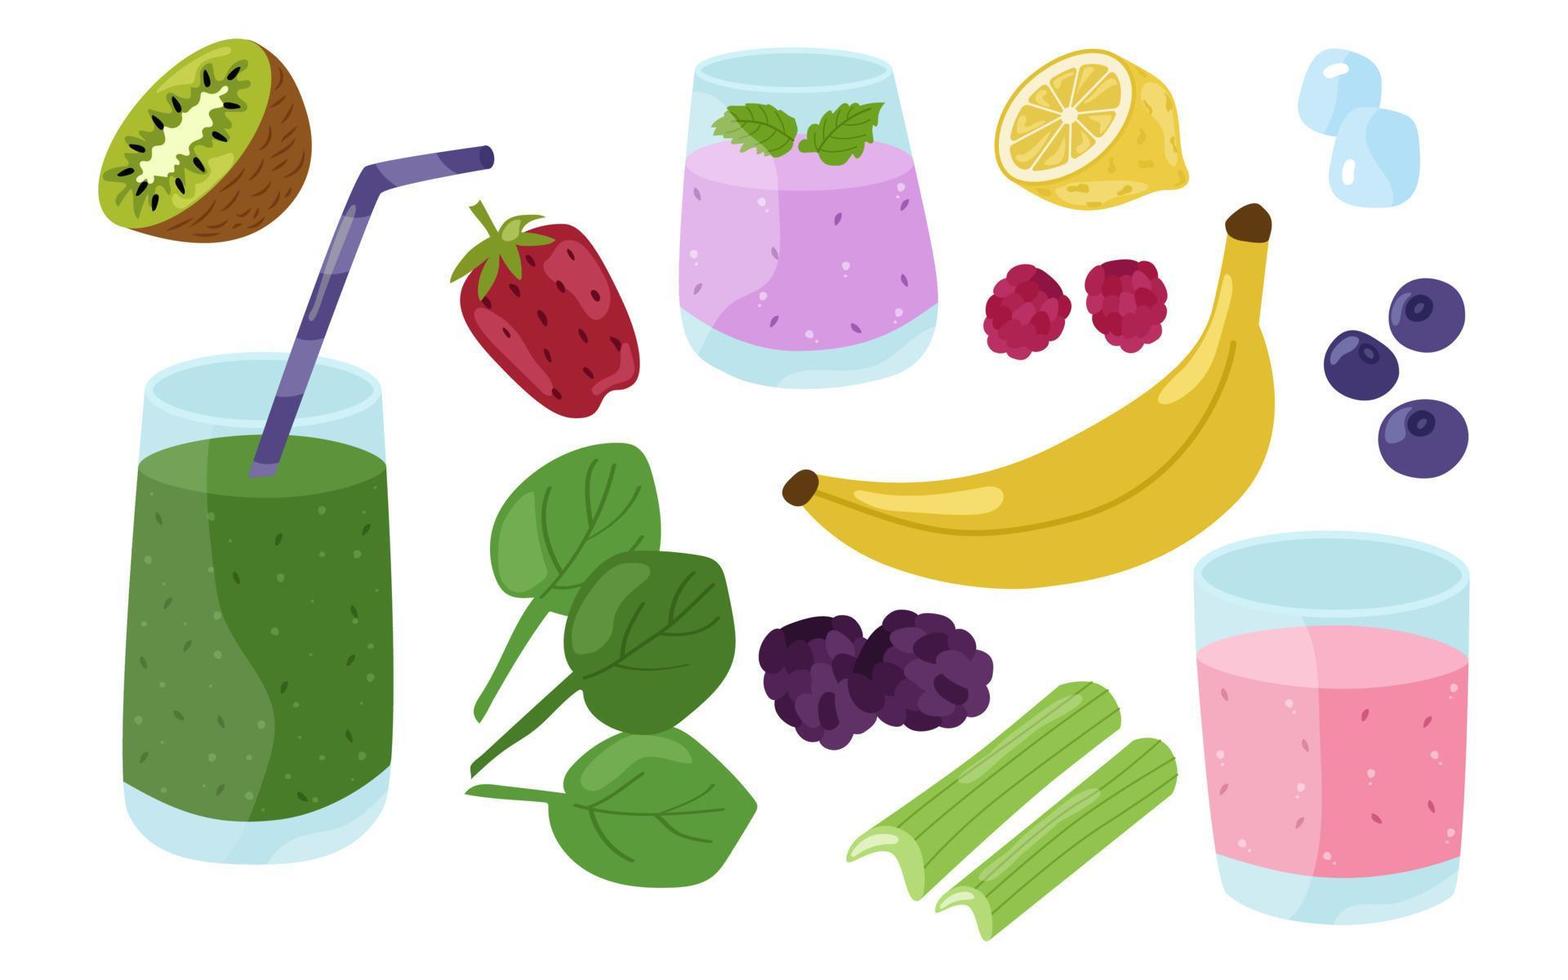 smoothies, frukter, bär och örter, ett färgglatt sommarset. vektor illustration av hälsosamma drycker, jordgubbar, spenat, björnbär, hallon, citron, lime, selleri, is, blåbär.